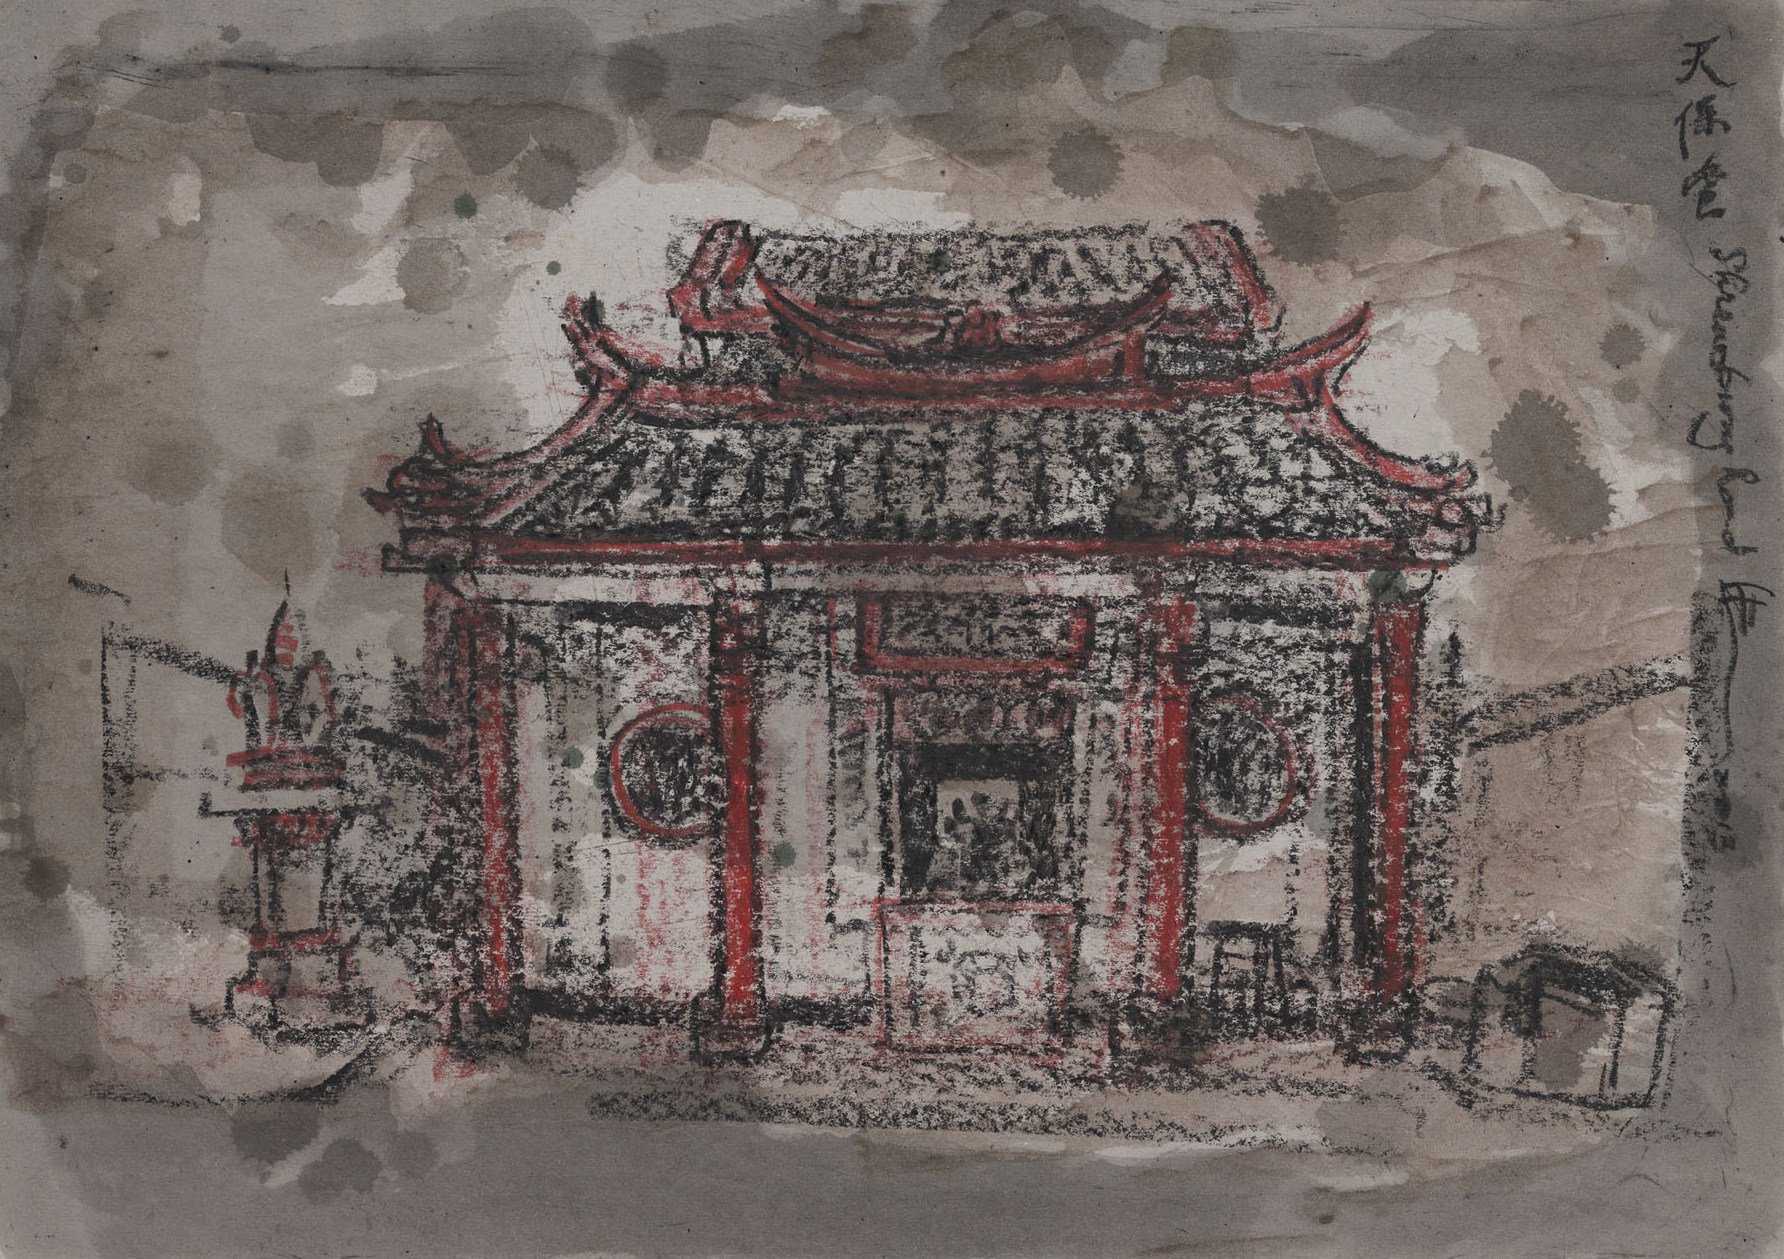 Tian Bao Tang Temple